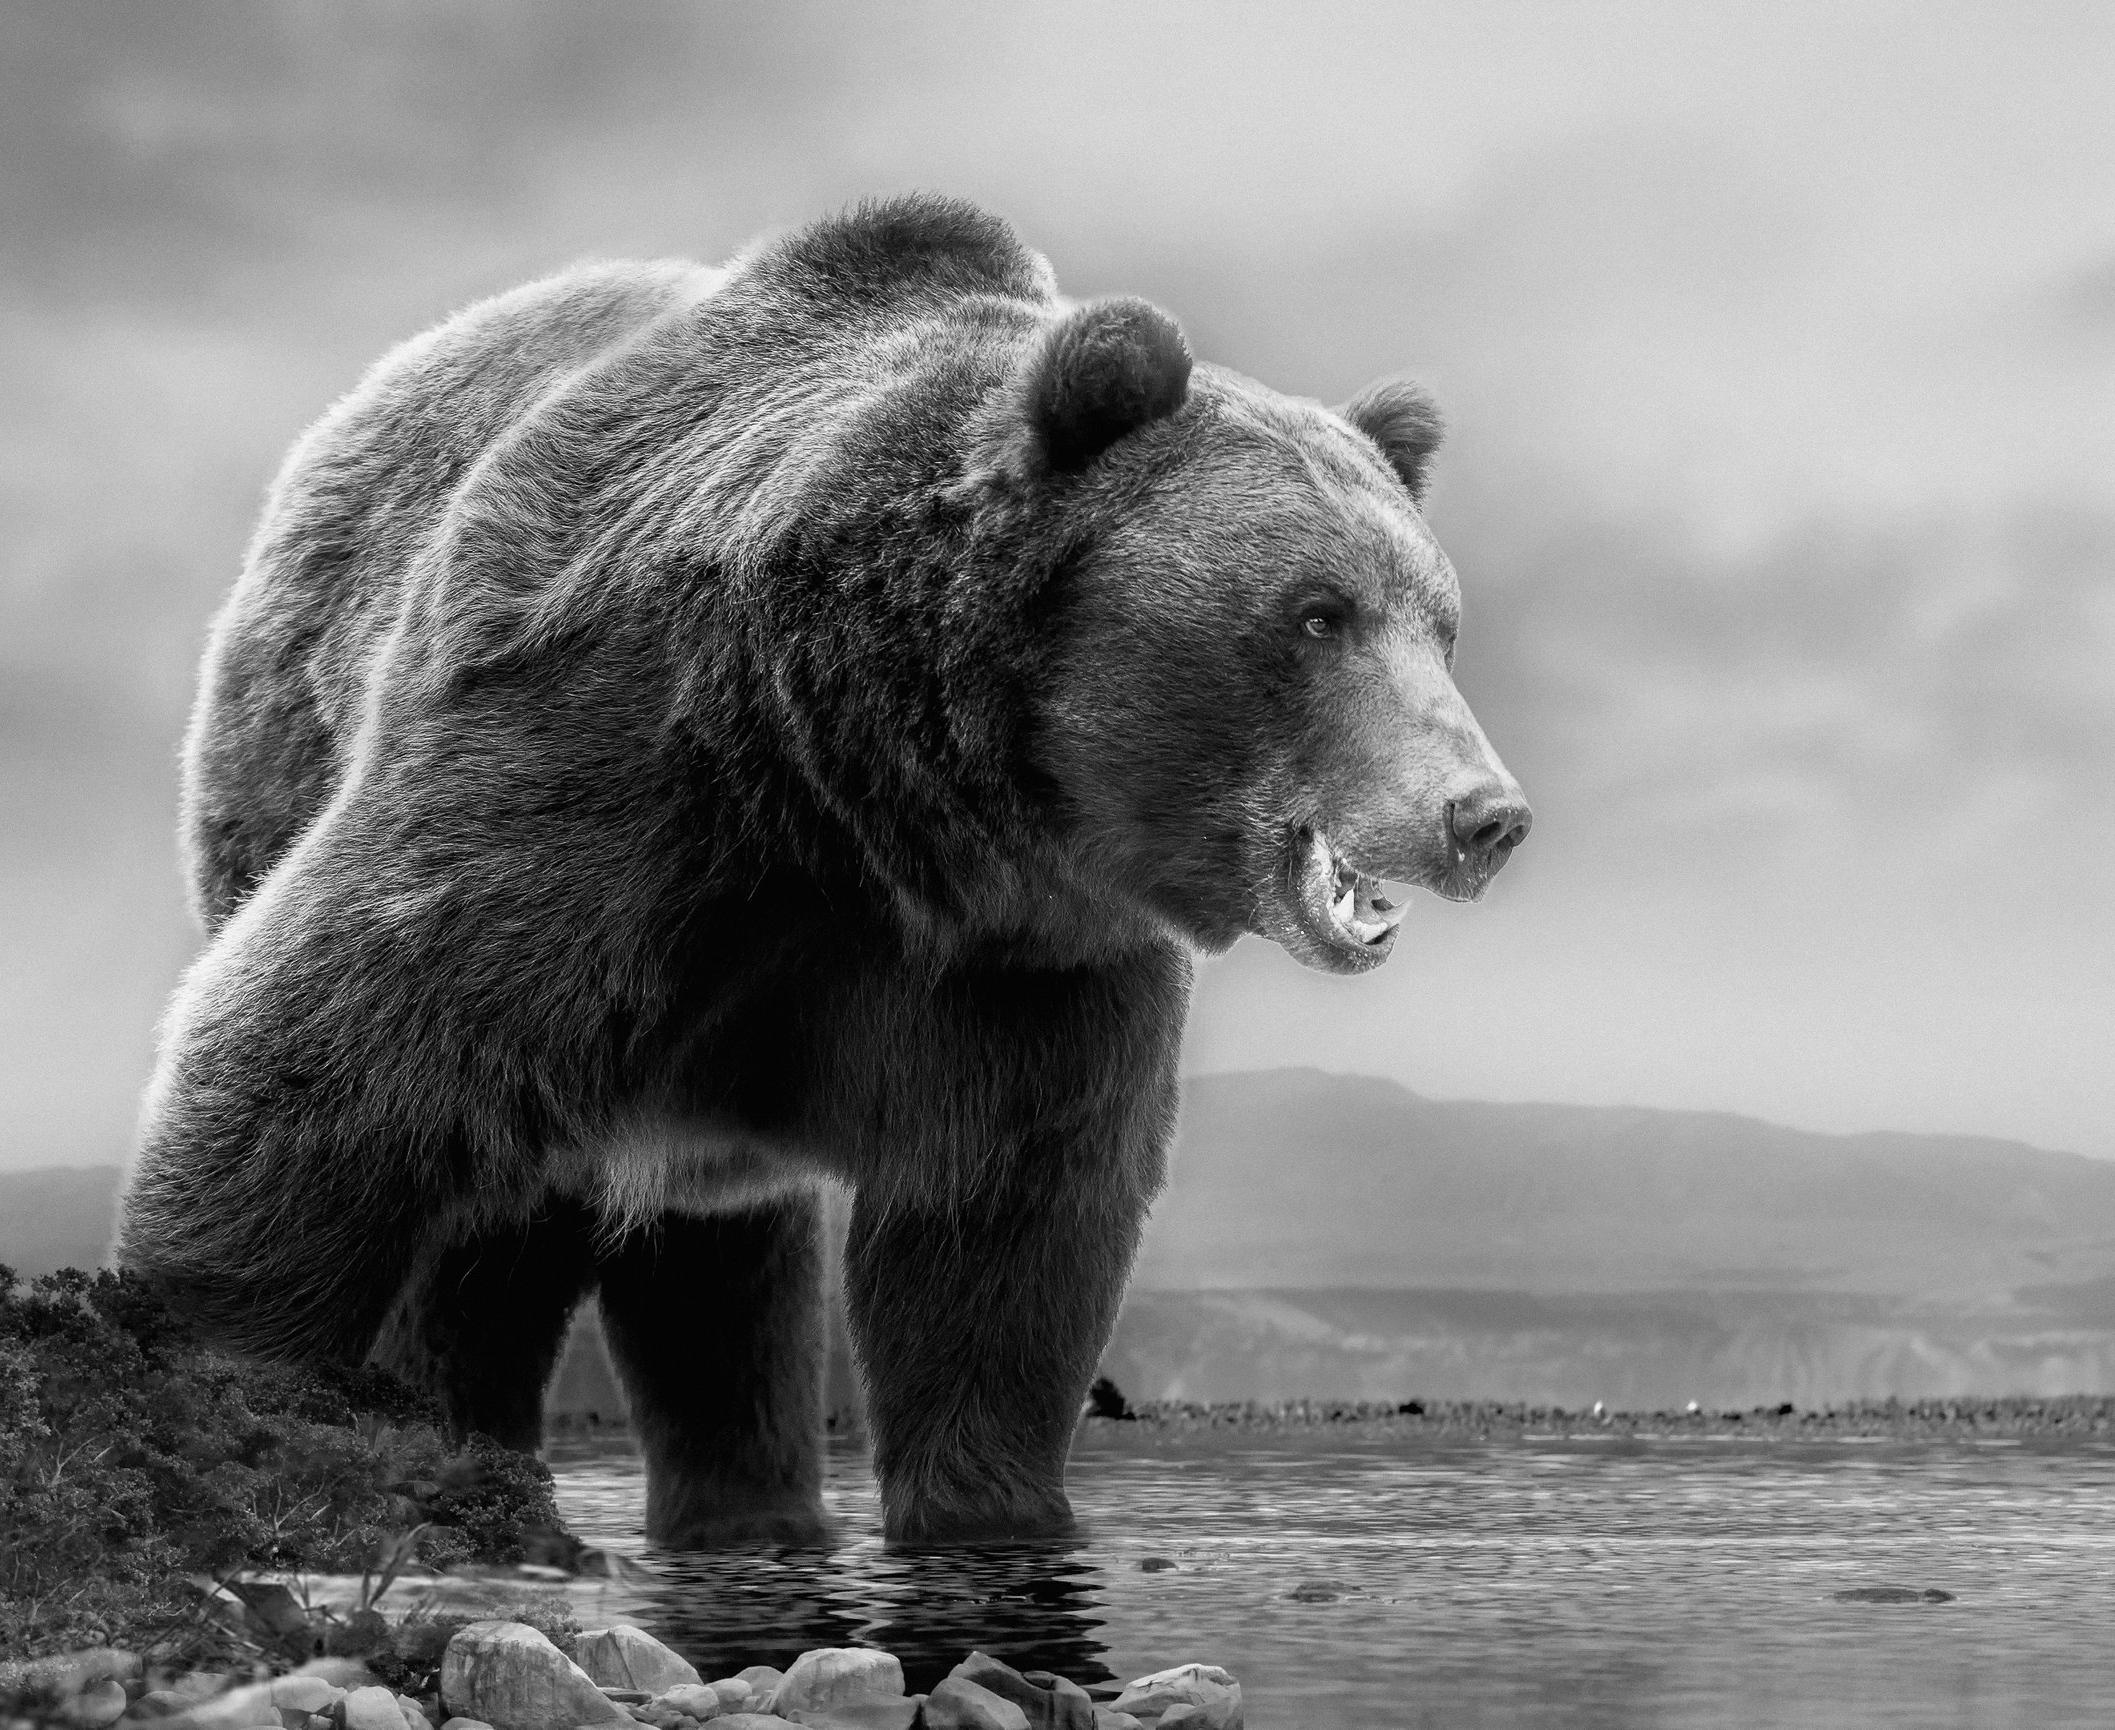 Animal Print Shane Russeck - Photographie Kodiak Grizzly Bear « On The Waterfront » (ours au bord de l'eau) 36x48, non signée